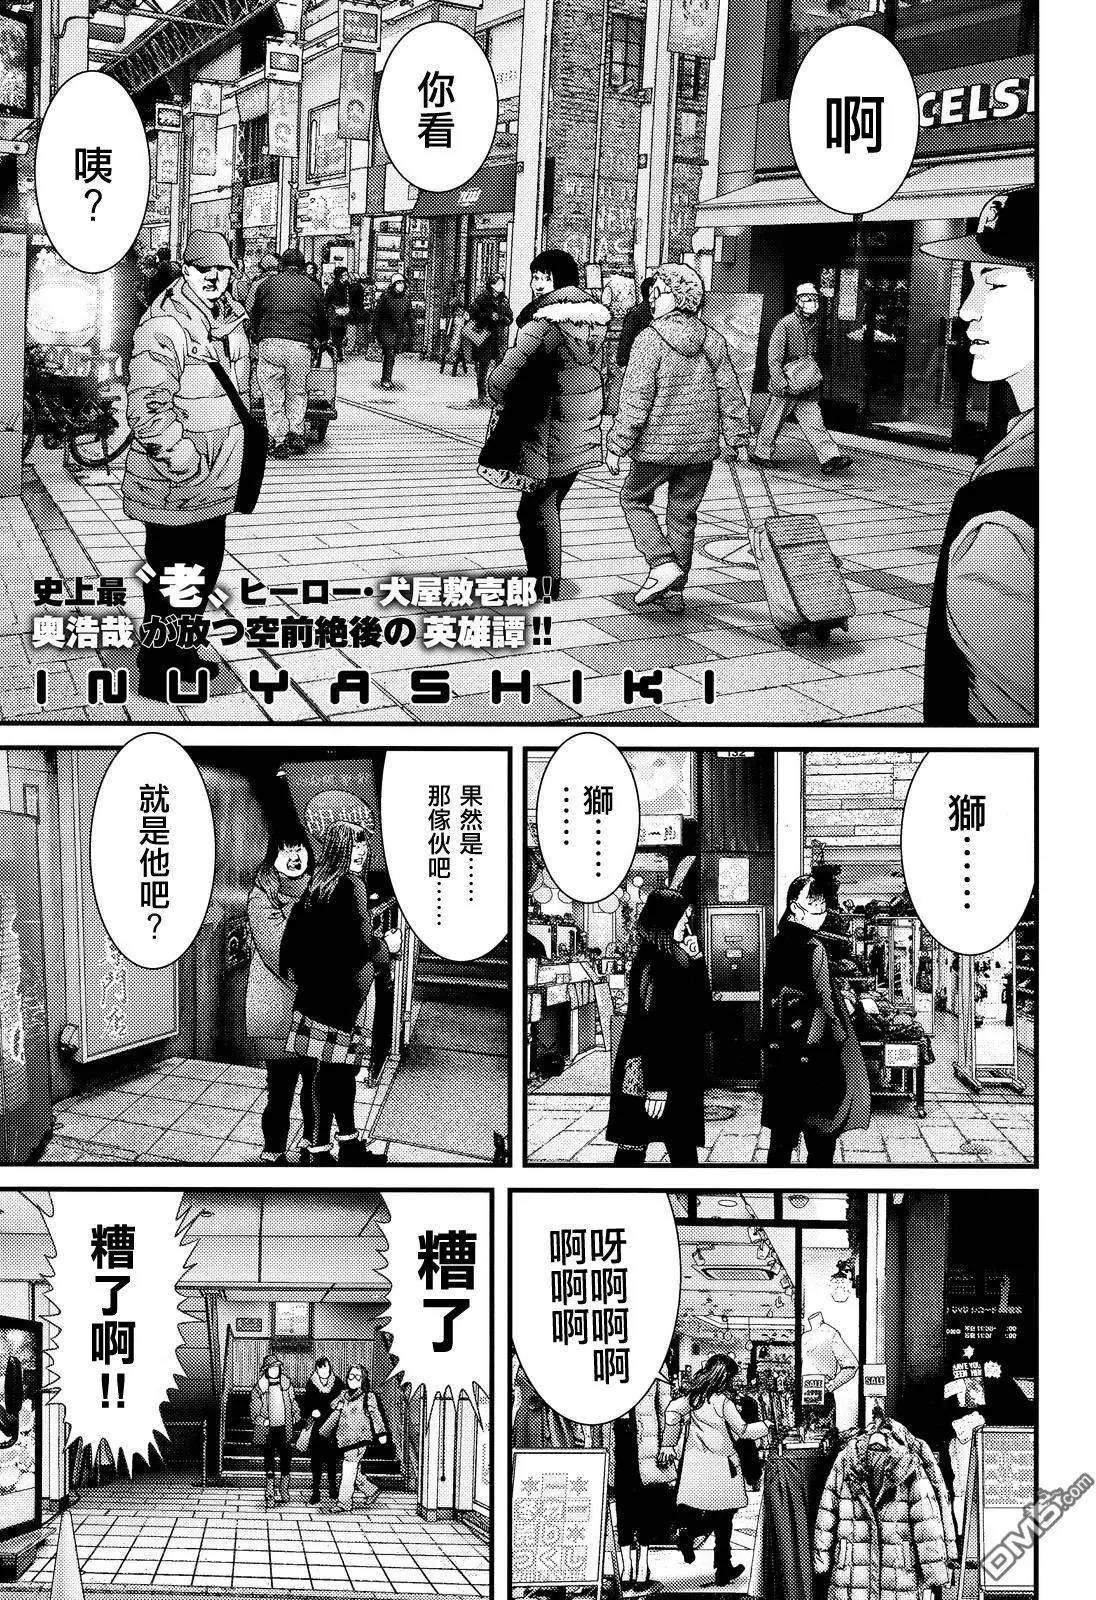 杀戮重生犬屋敷漫画单行本 第7集-漫画DB